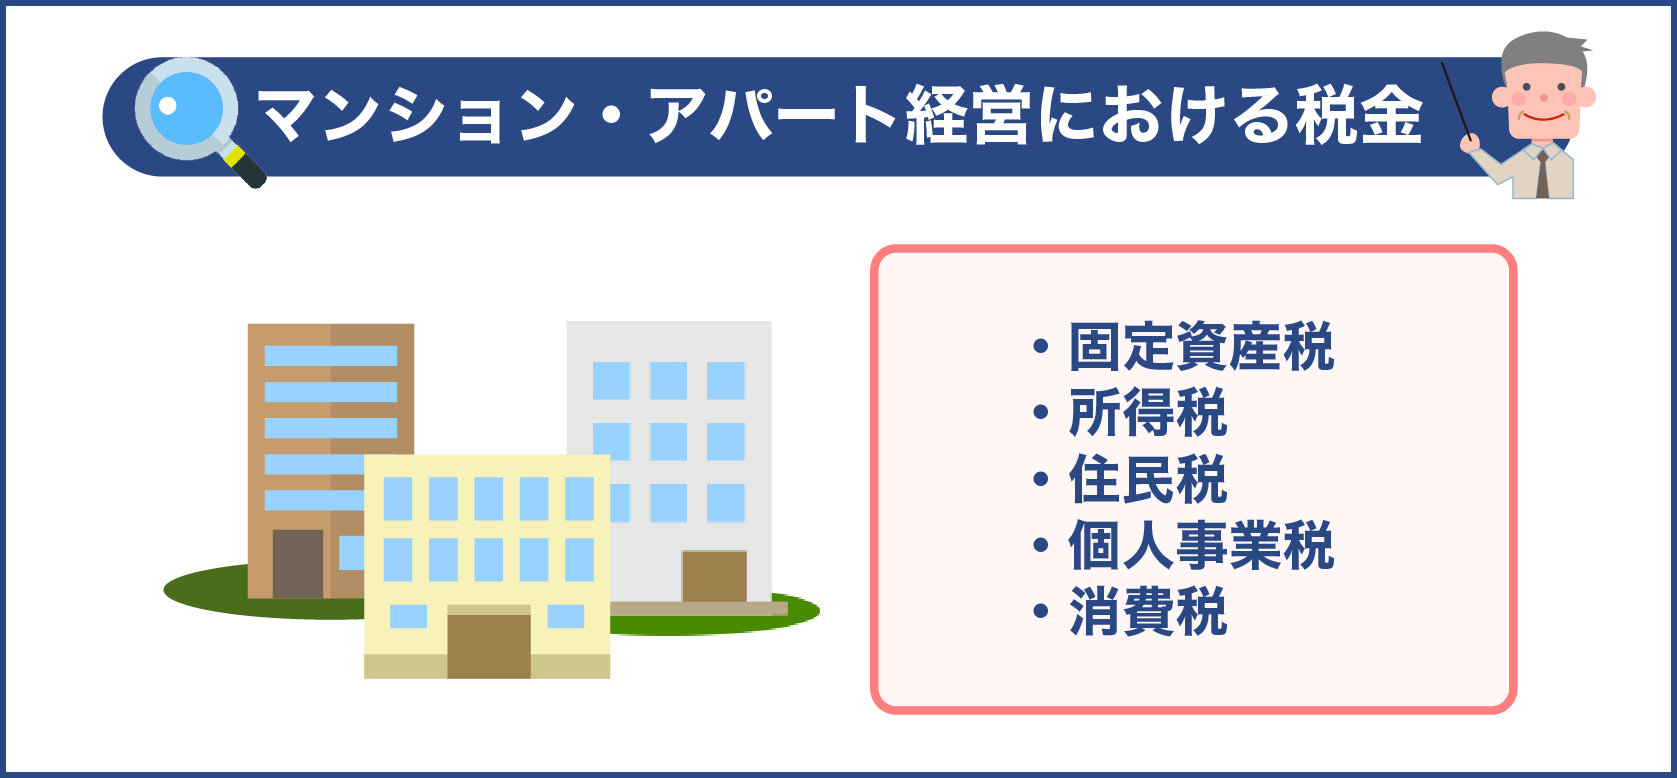 マンション・アパート経営における税金